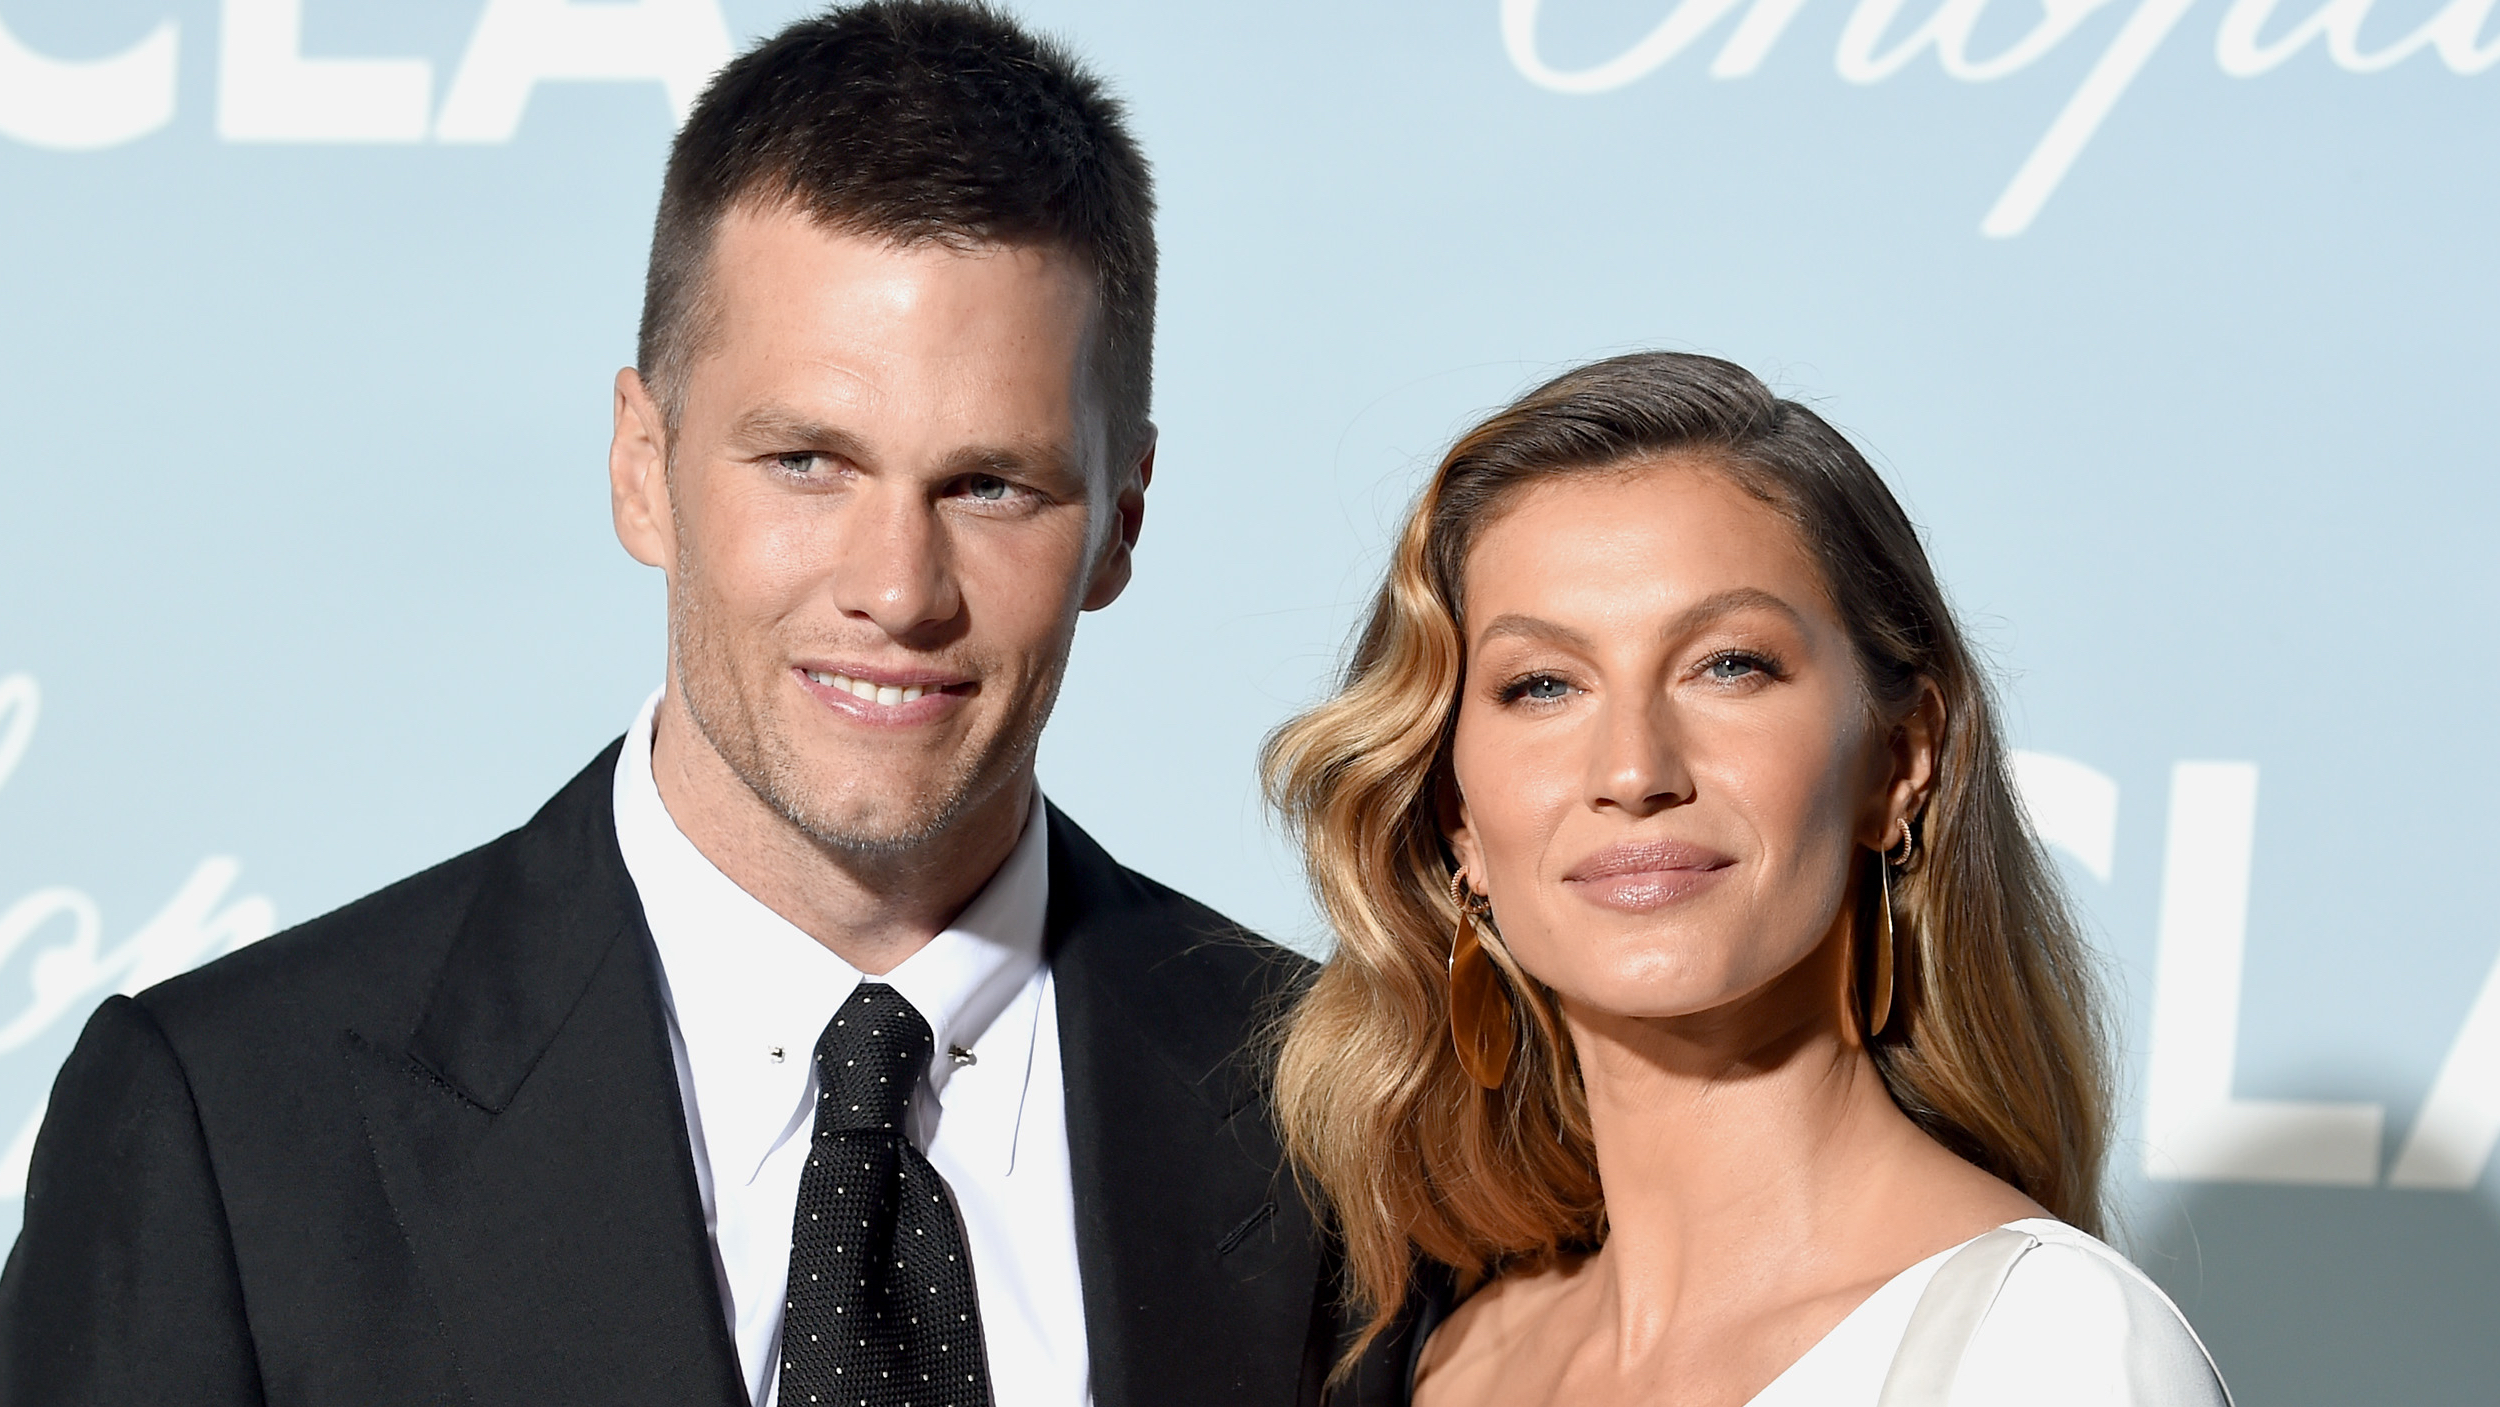 Gisele Bündchen Breaks Silence About Tom Brady Divorce, Weighs In On Rumors